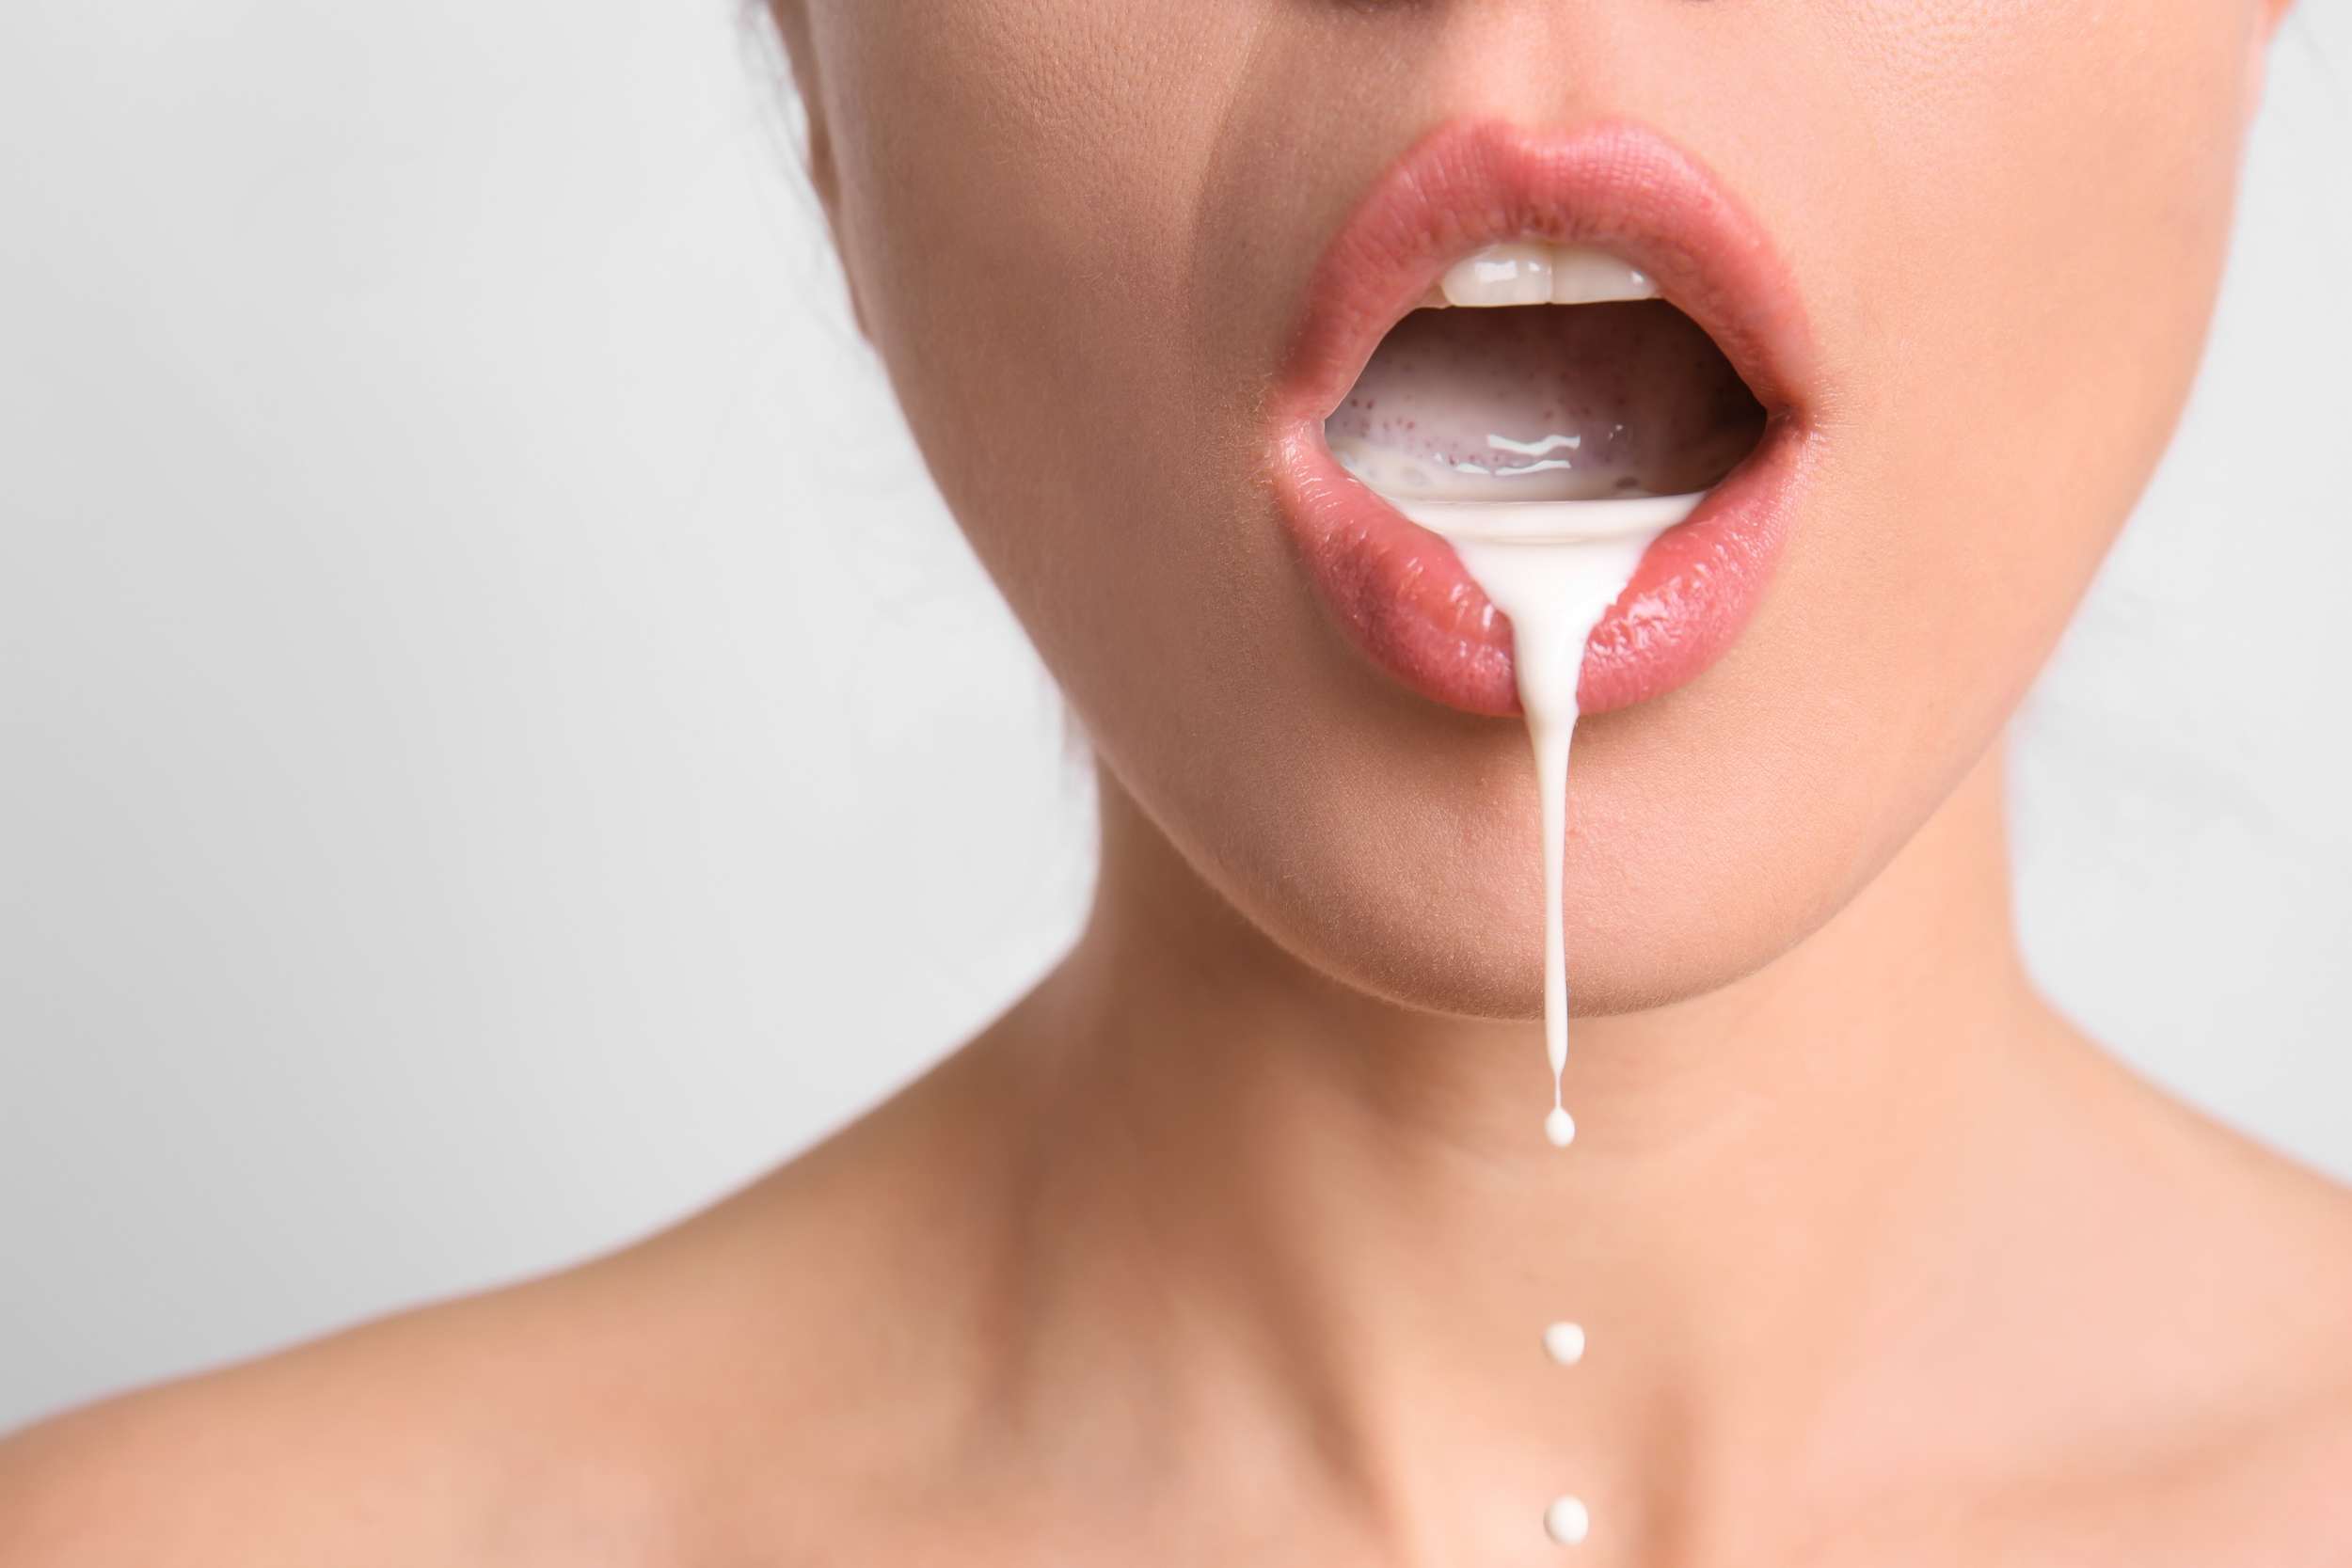 Une bouche de femme sensuelle avec du lait qui coule. C'est de la suggestion pour le sperme de l'homme.